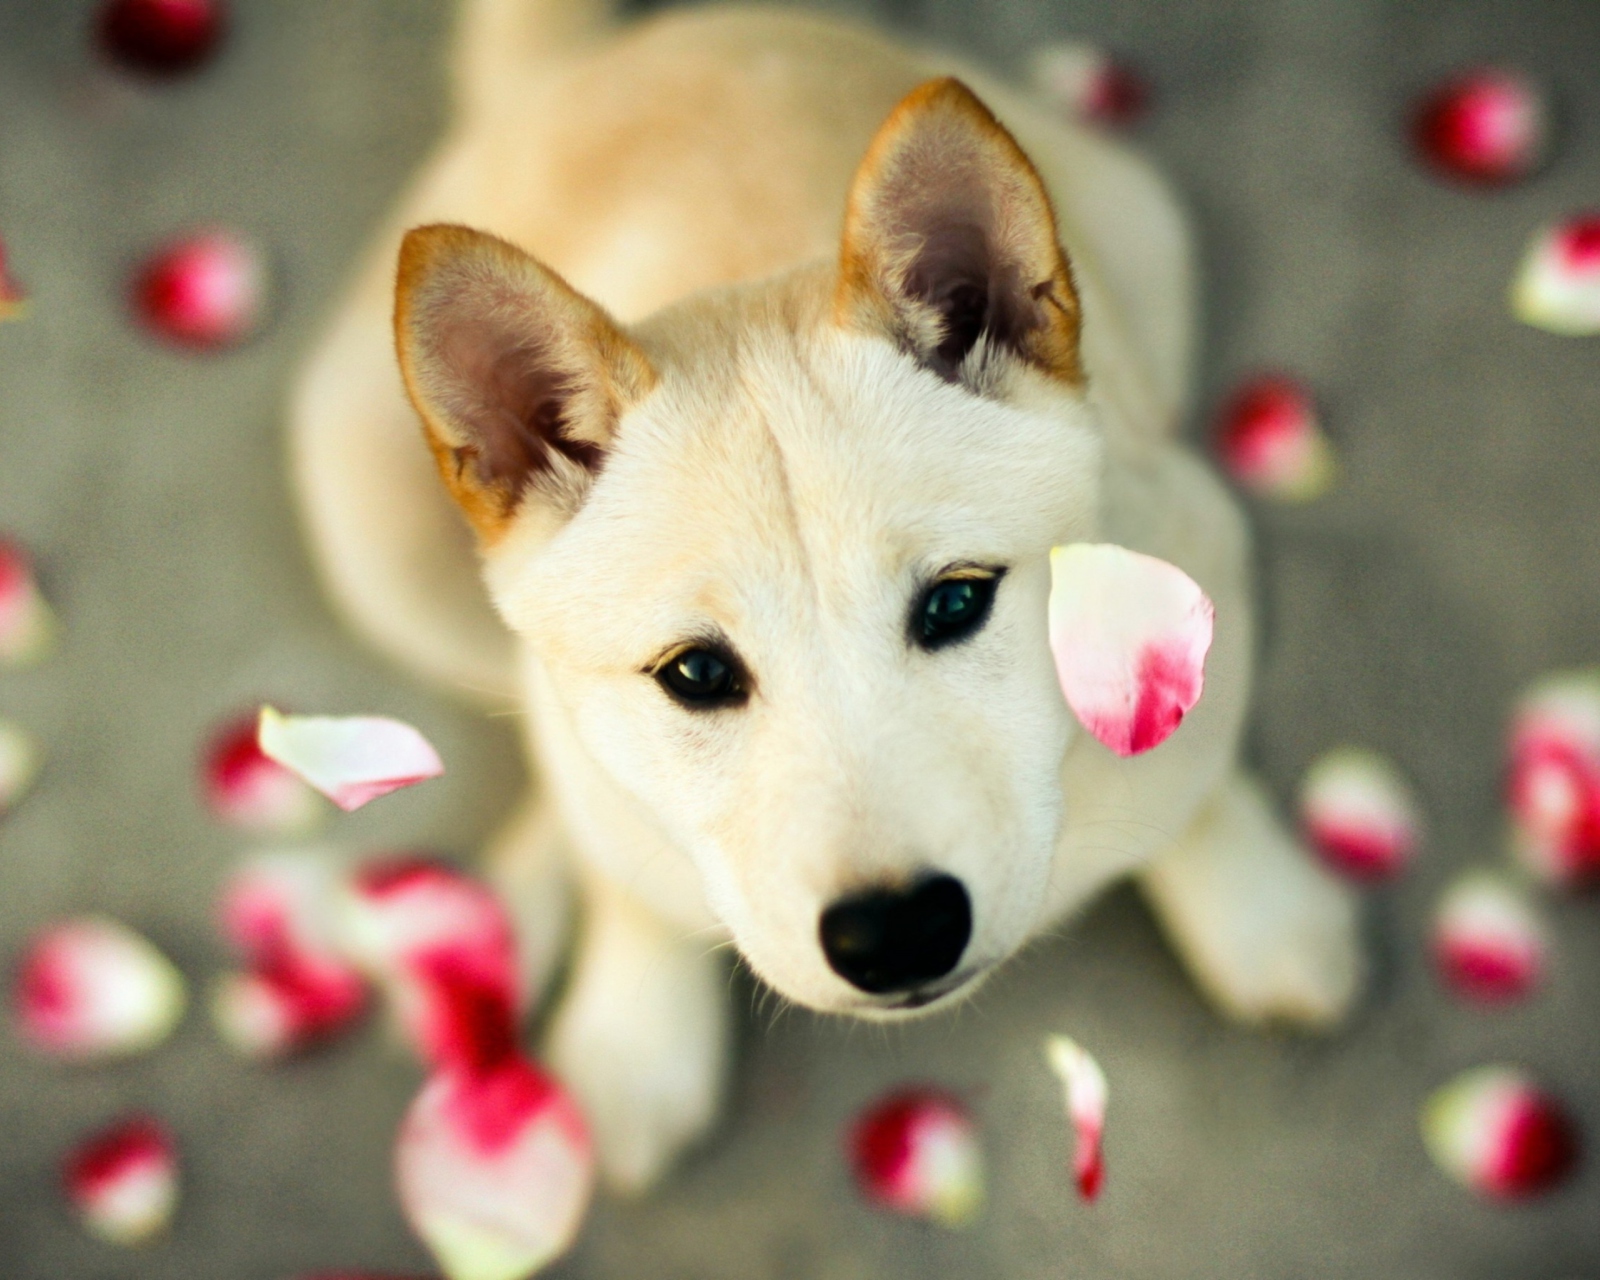 Обои Dog And Rose Petals 1600x1280